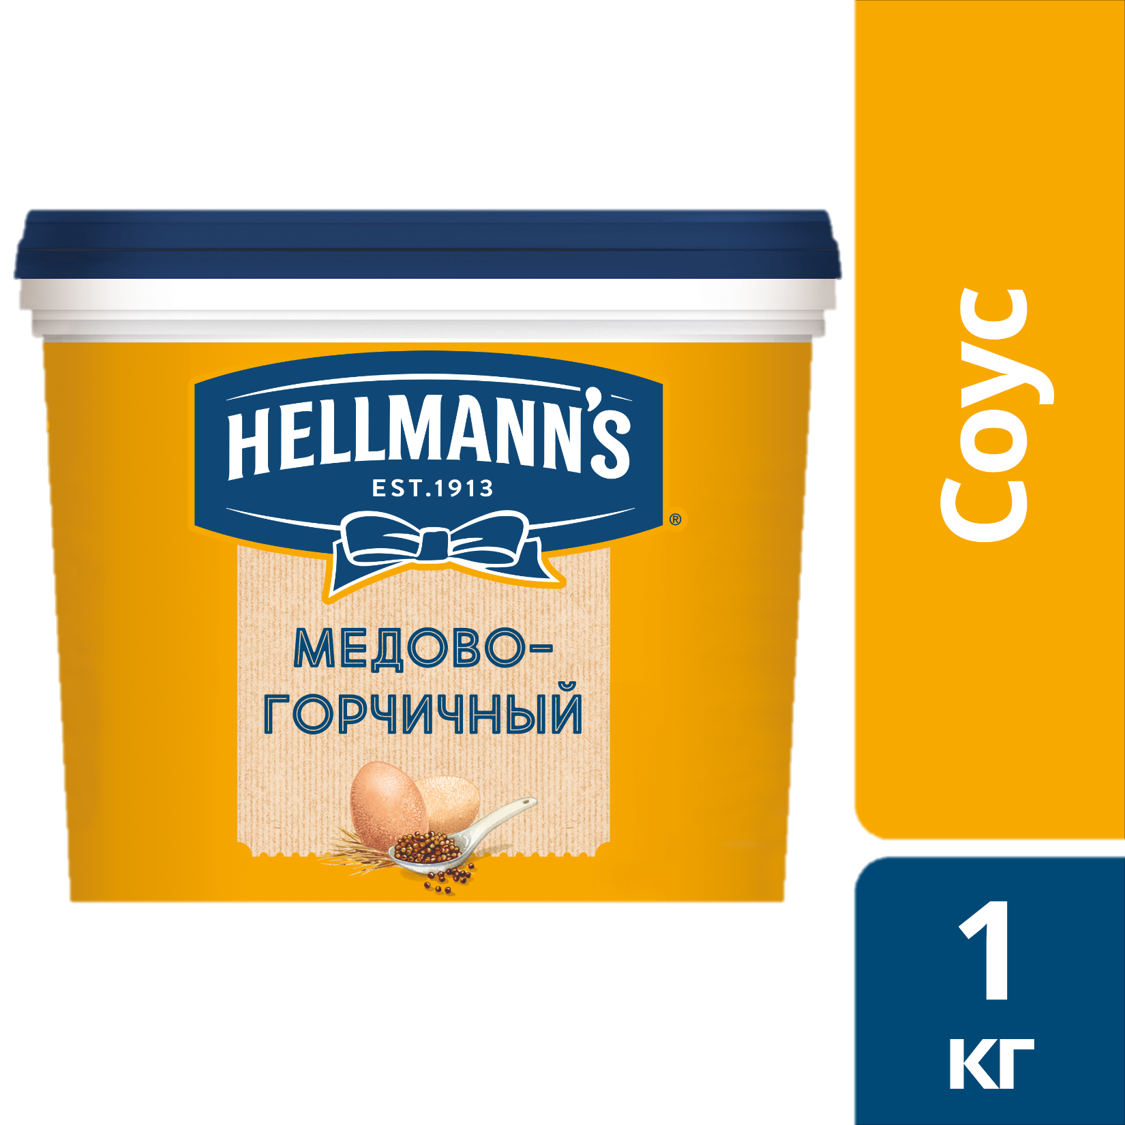 HELLMANN'S Соус Медово-горчичный (1кг) - Unilever Food Solution. Новая линейка соусов Hellmann's